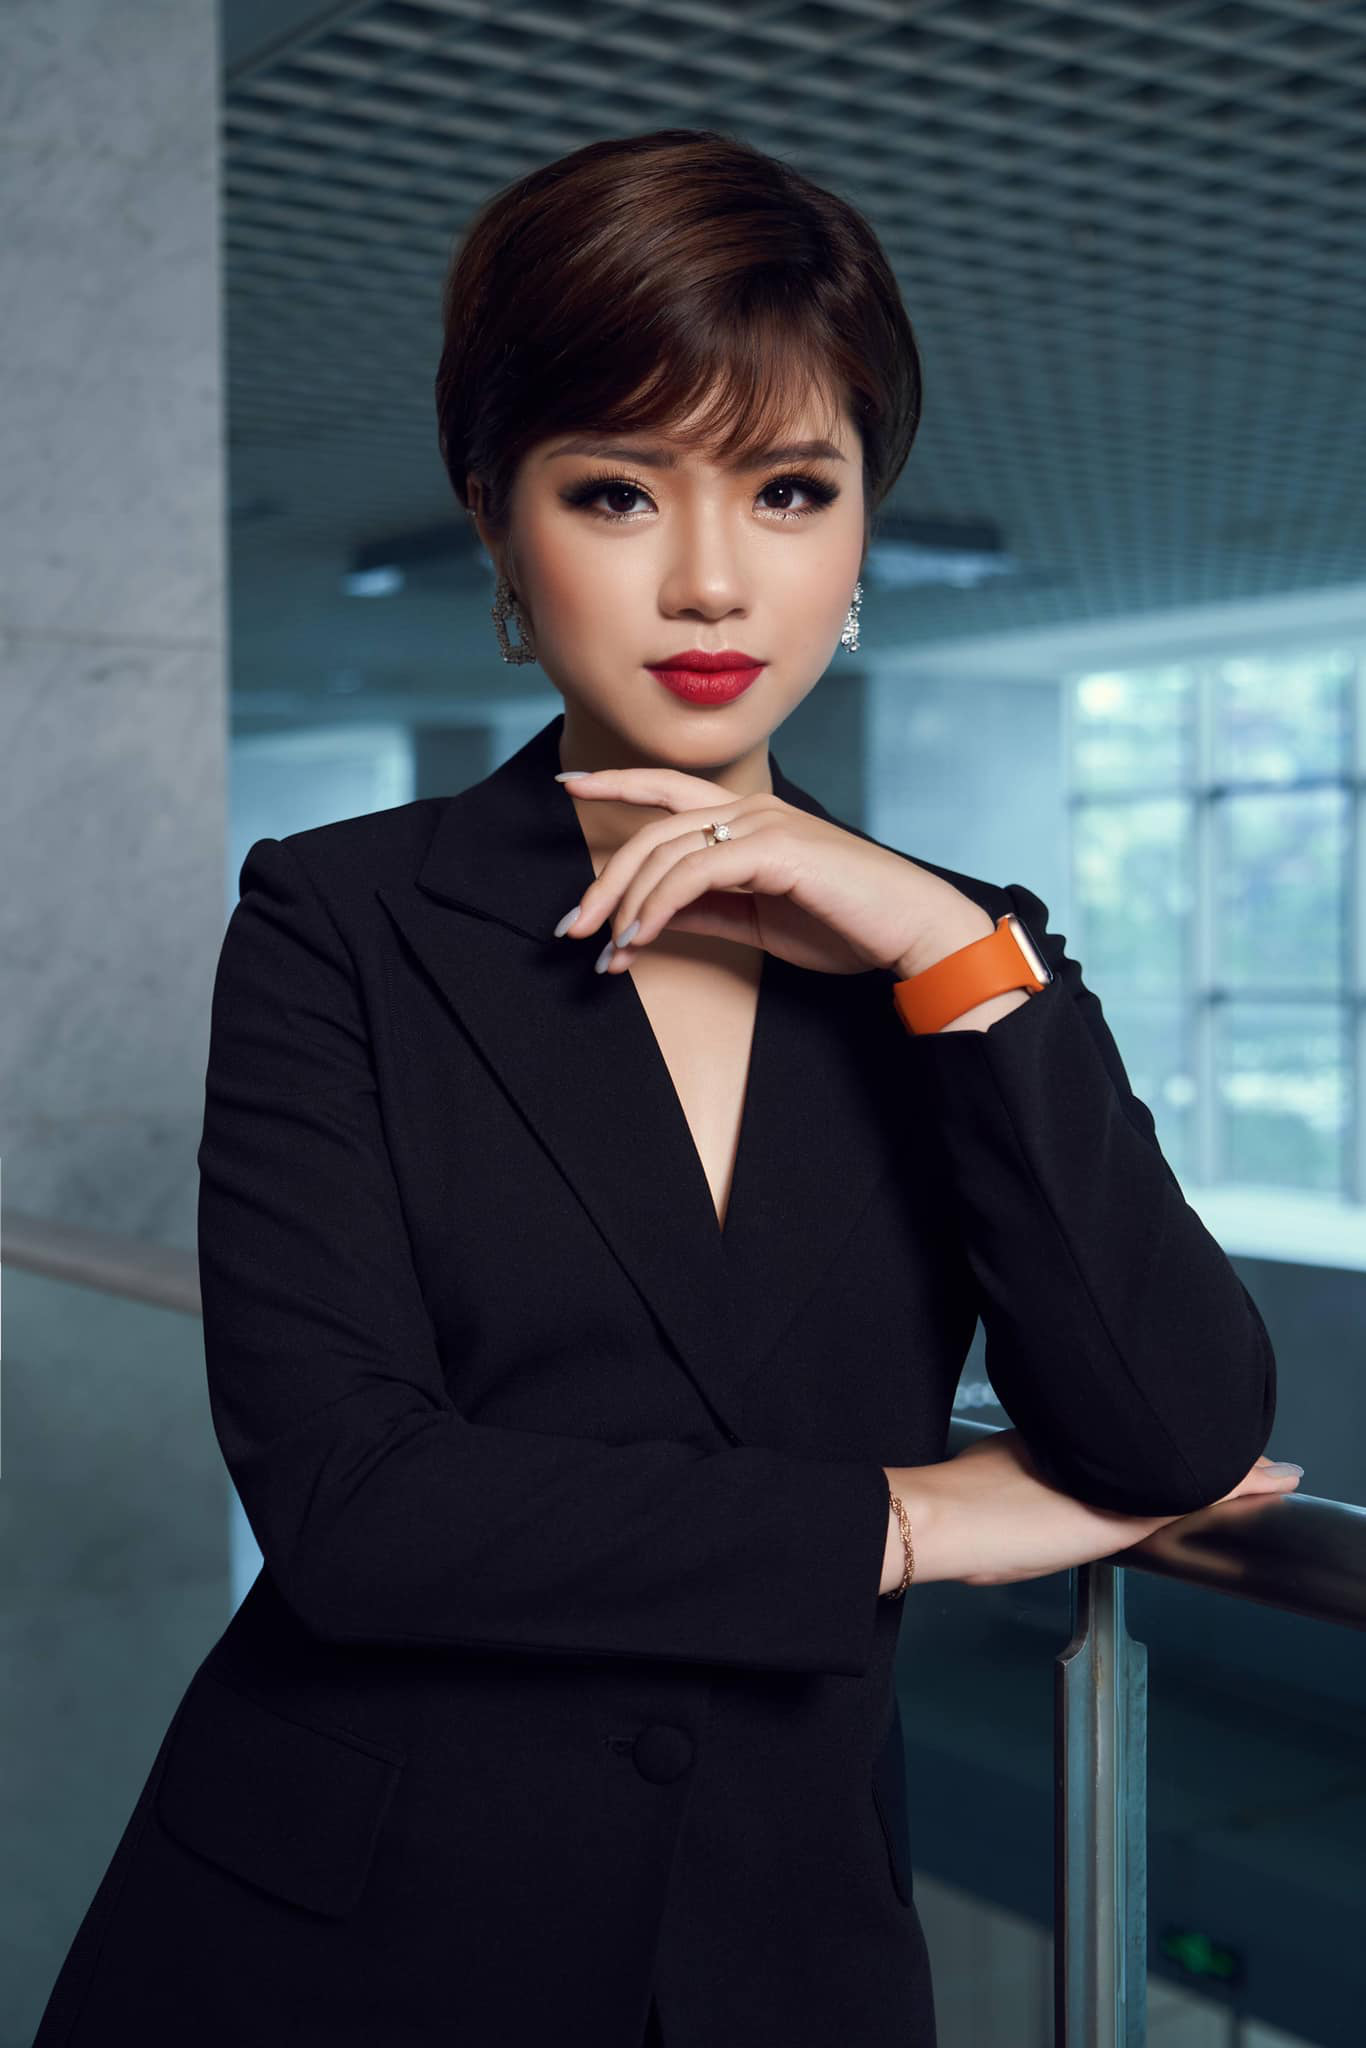 Nữ BTV xinh đẹp Thái Trang được biết đến là MC của chương trình Cất cánh trên kênh VTV3. Cô nàng từng khiến khán giả bất ngờ khi thay đổi phong cách tóc ngắn cá tính. Dù vậy tạo hình mới mẻ này lại giúp cô nàng nhận về nhiều lời khen vì quá hợp với cô nàng.